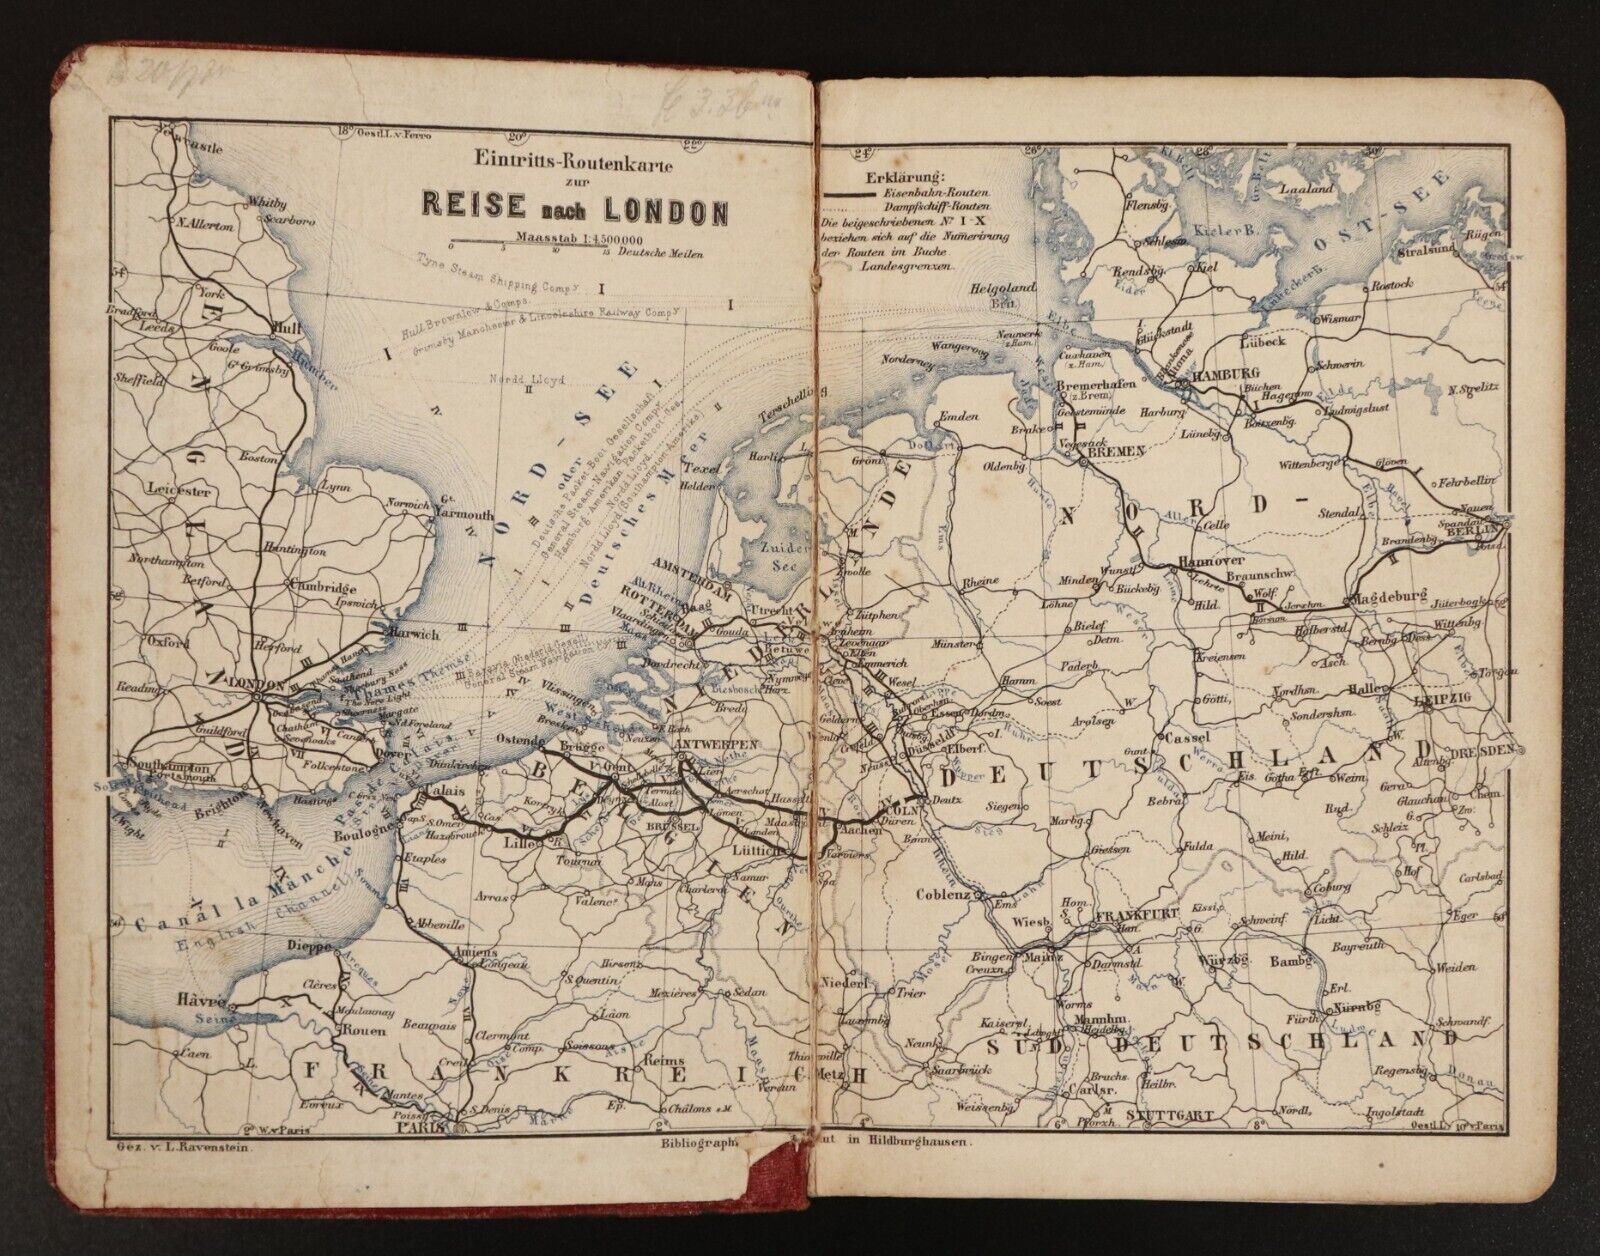 1871 London England und Schottland by Ravenstein Antiquarian Travel Guide w/Maps